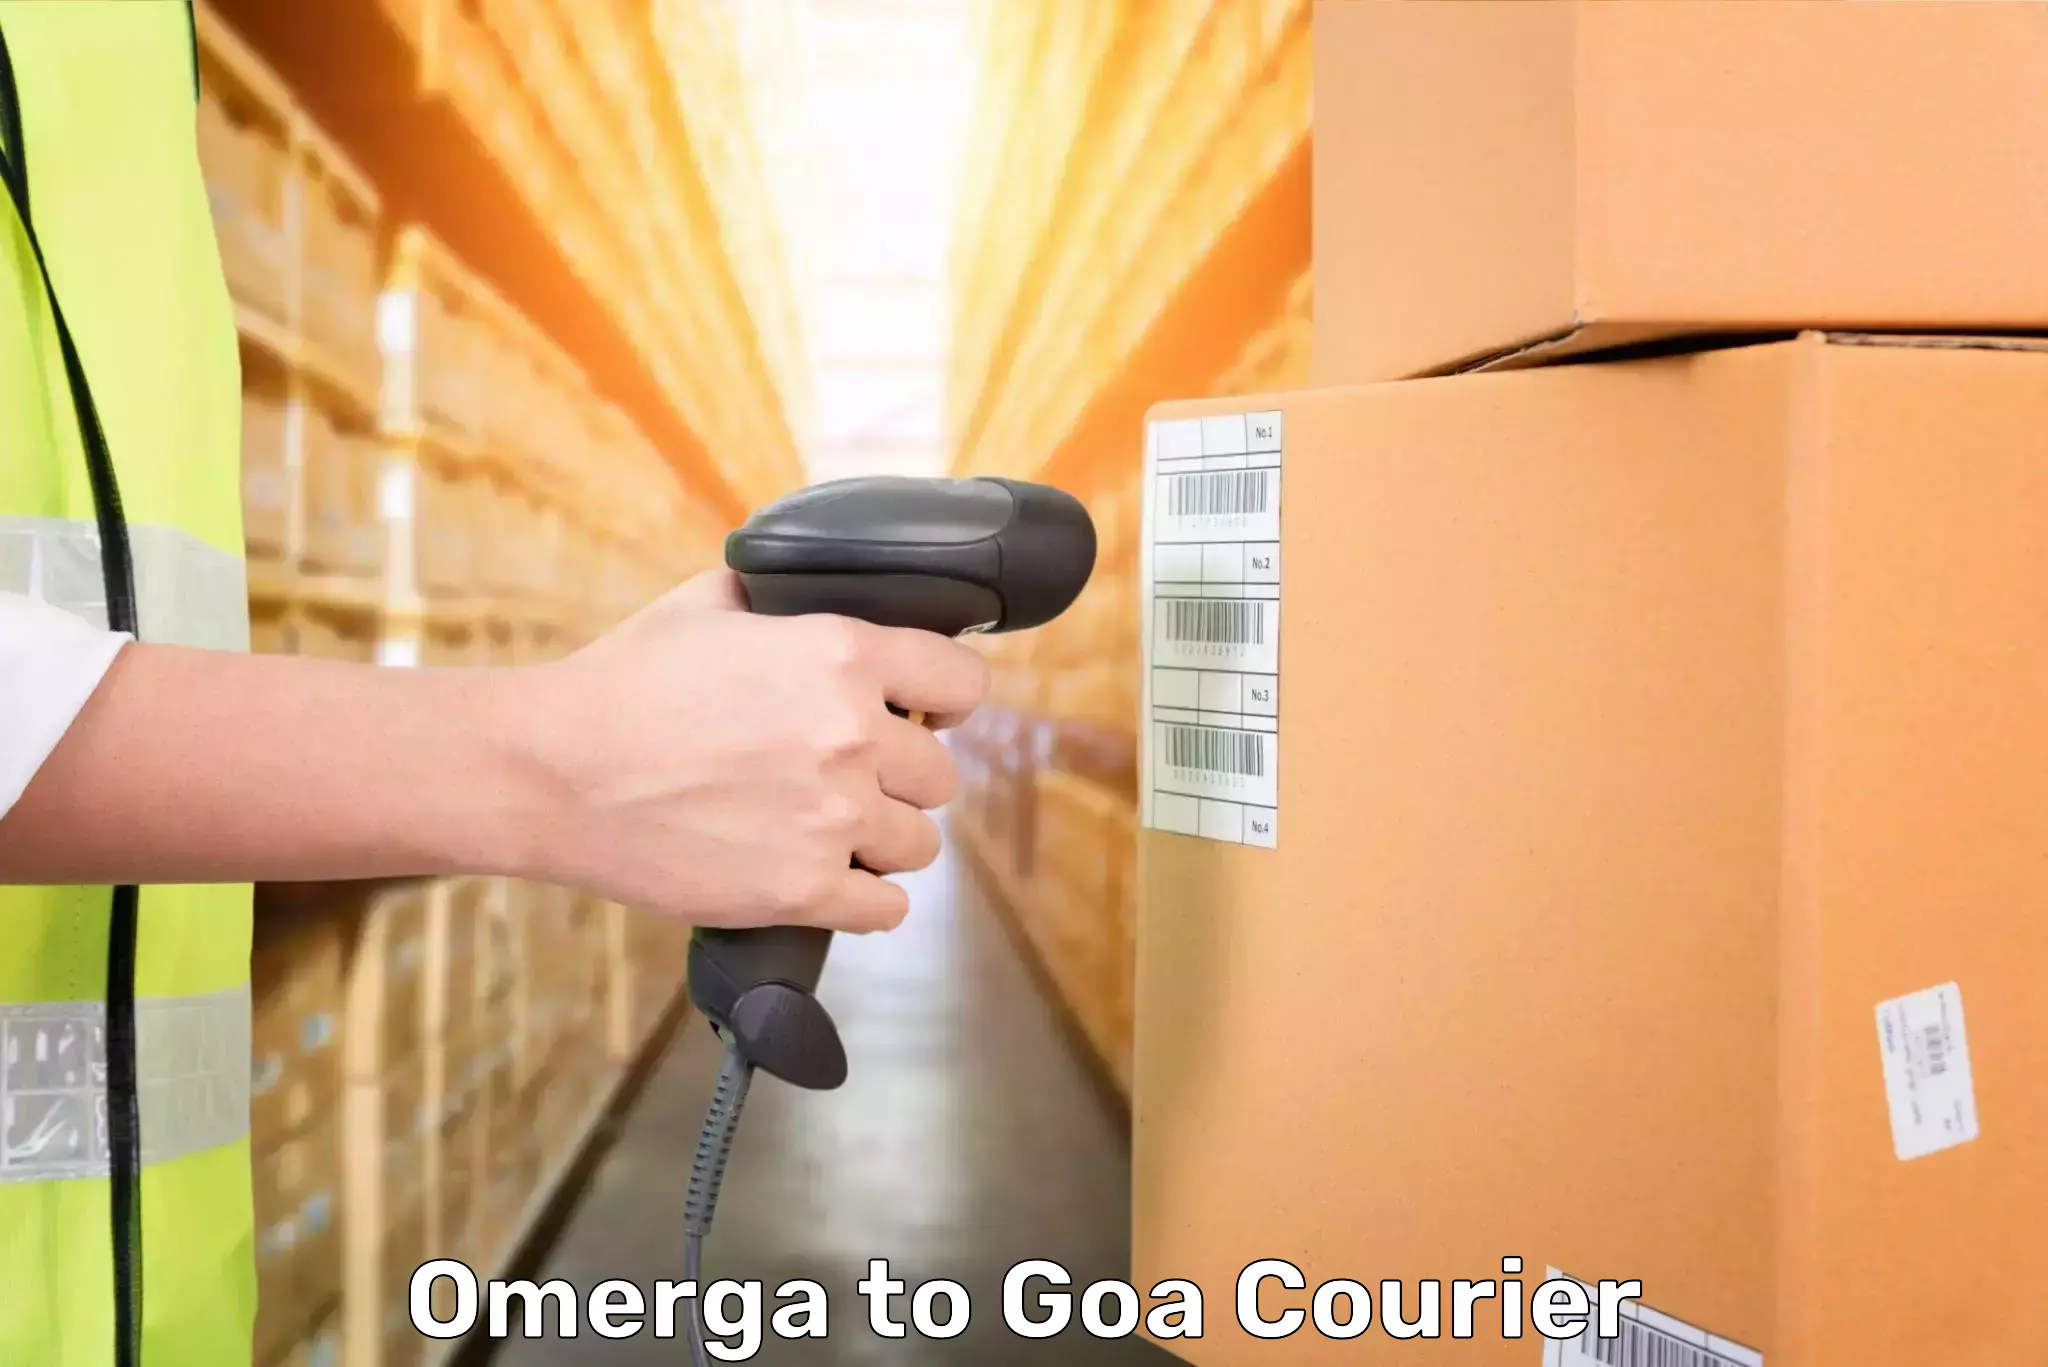 Luggage transfer service Omerga to Goa